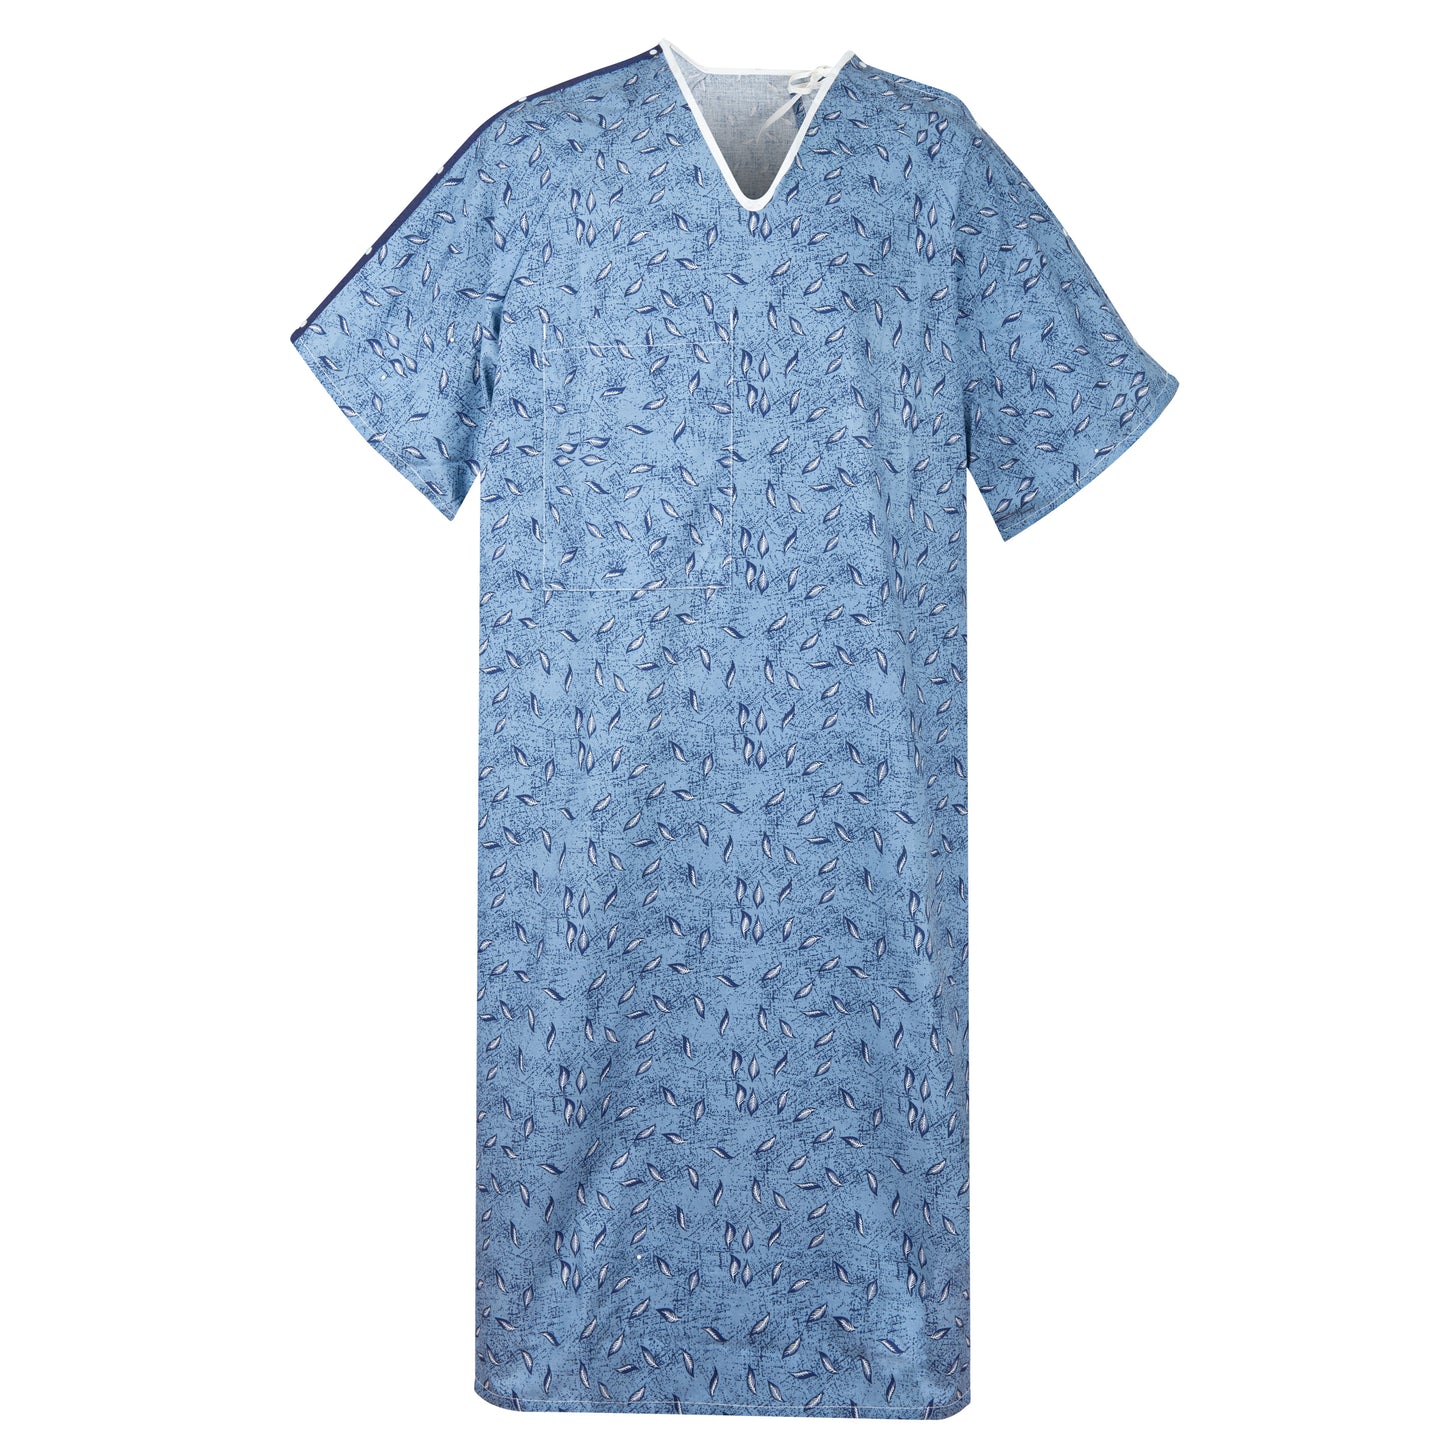 IV Gown, 48x65 inch, Tie Side, Indigo Blue Leaf Print, Large